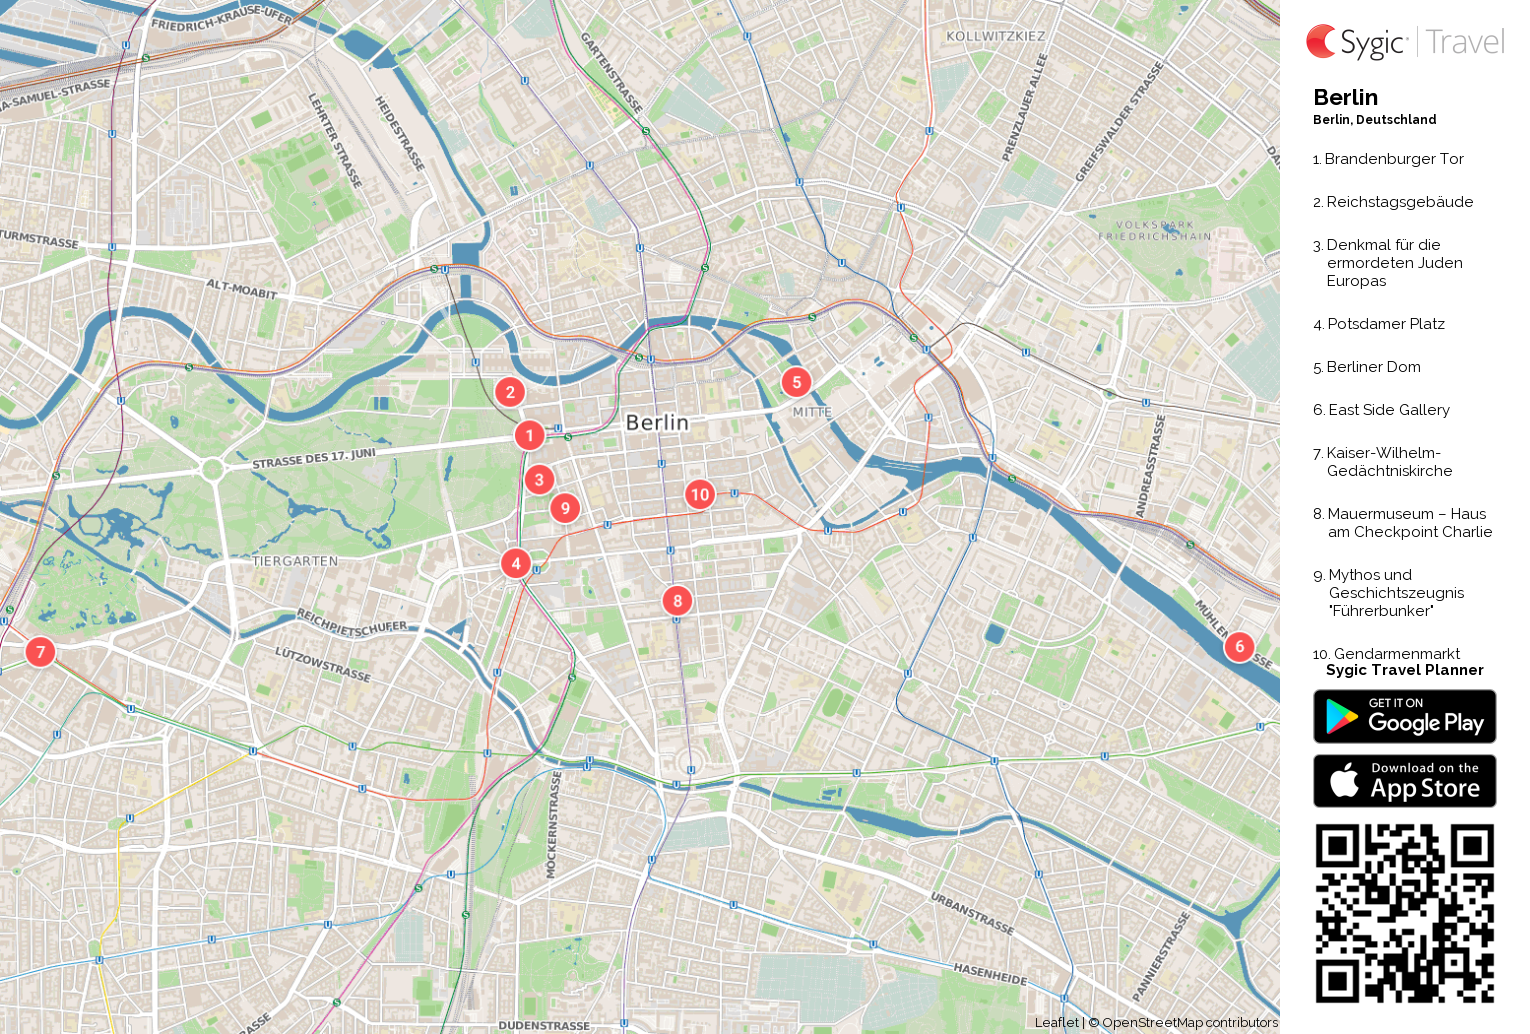 Karte Von Berlin Ausdrucken Sygic Travel